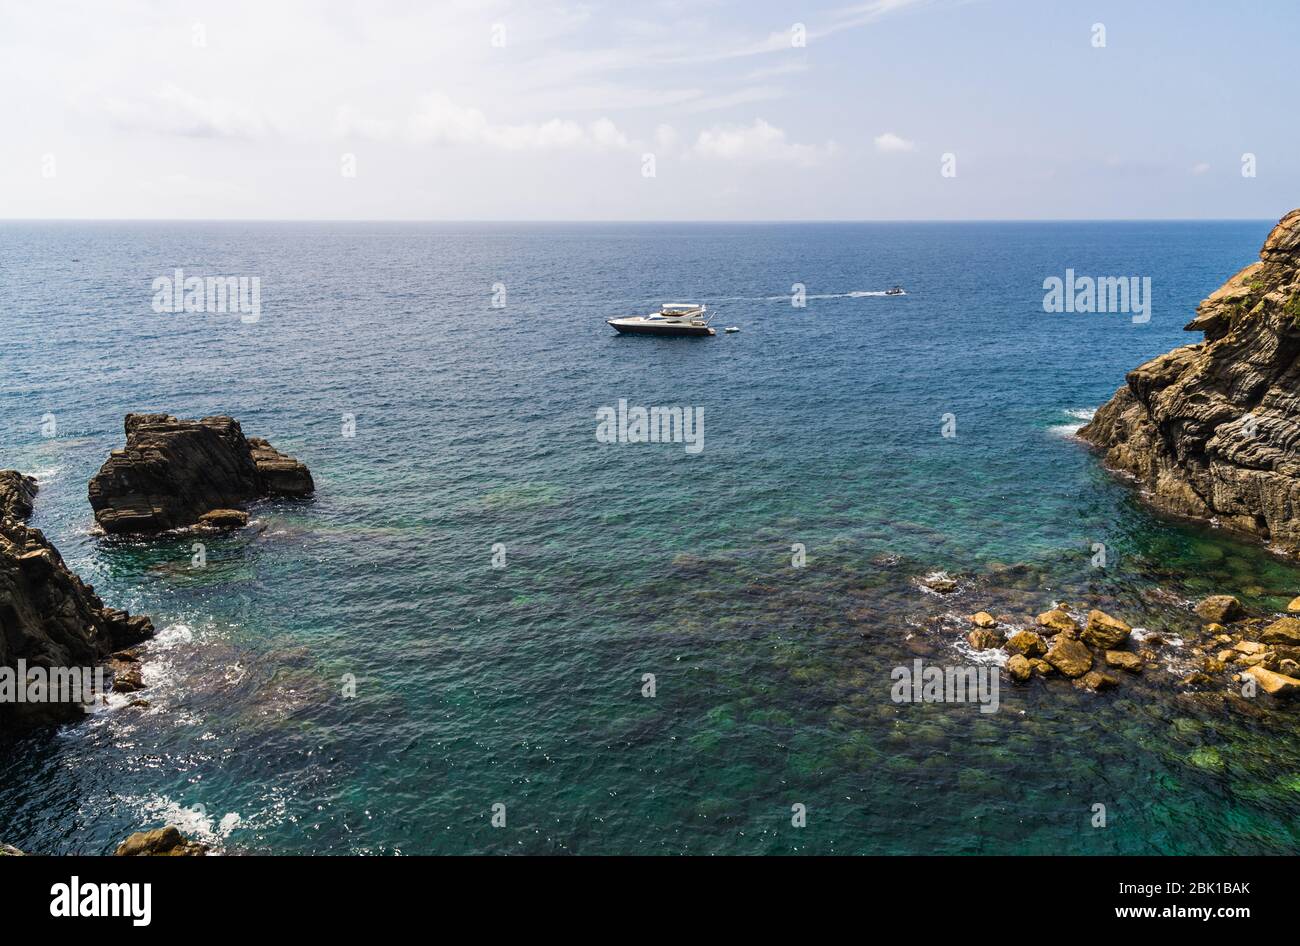 Costa ligure in Liguria, con acqua acquamarina e barche. Foto Stock